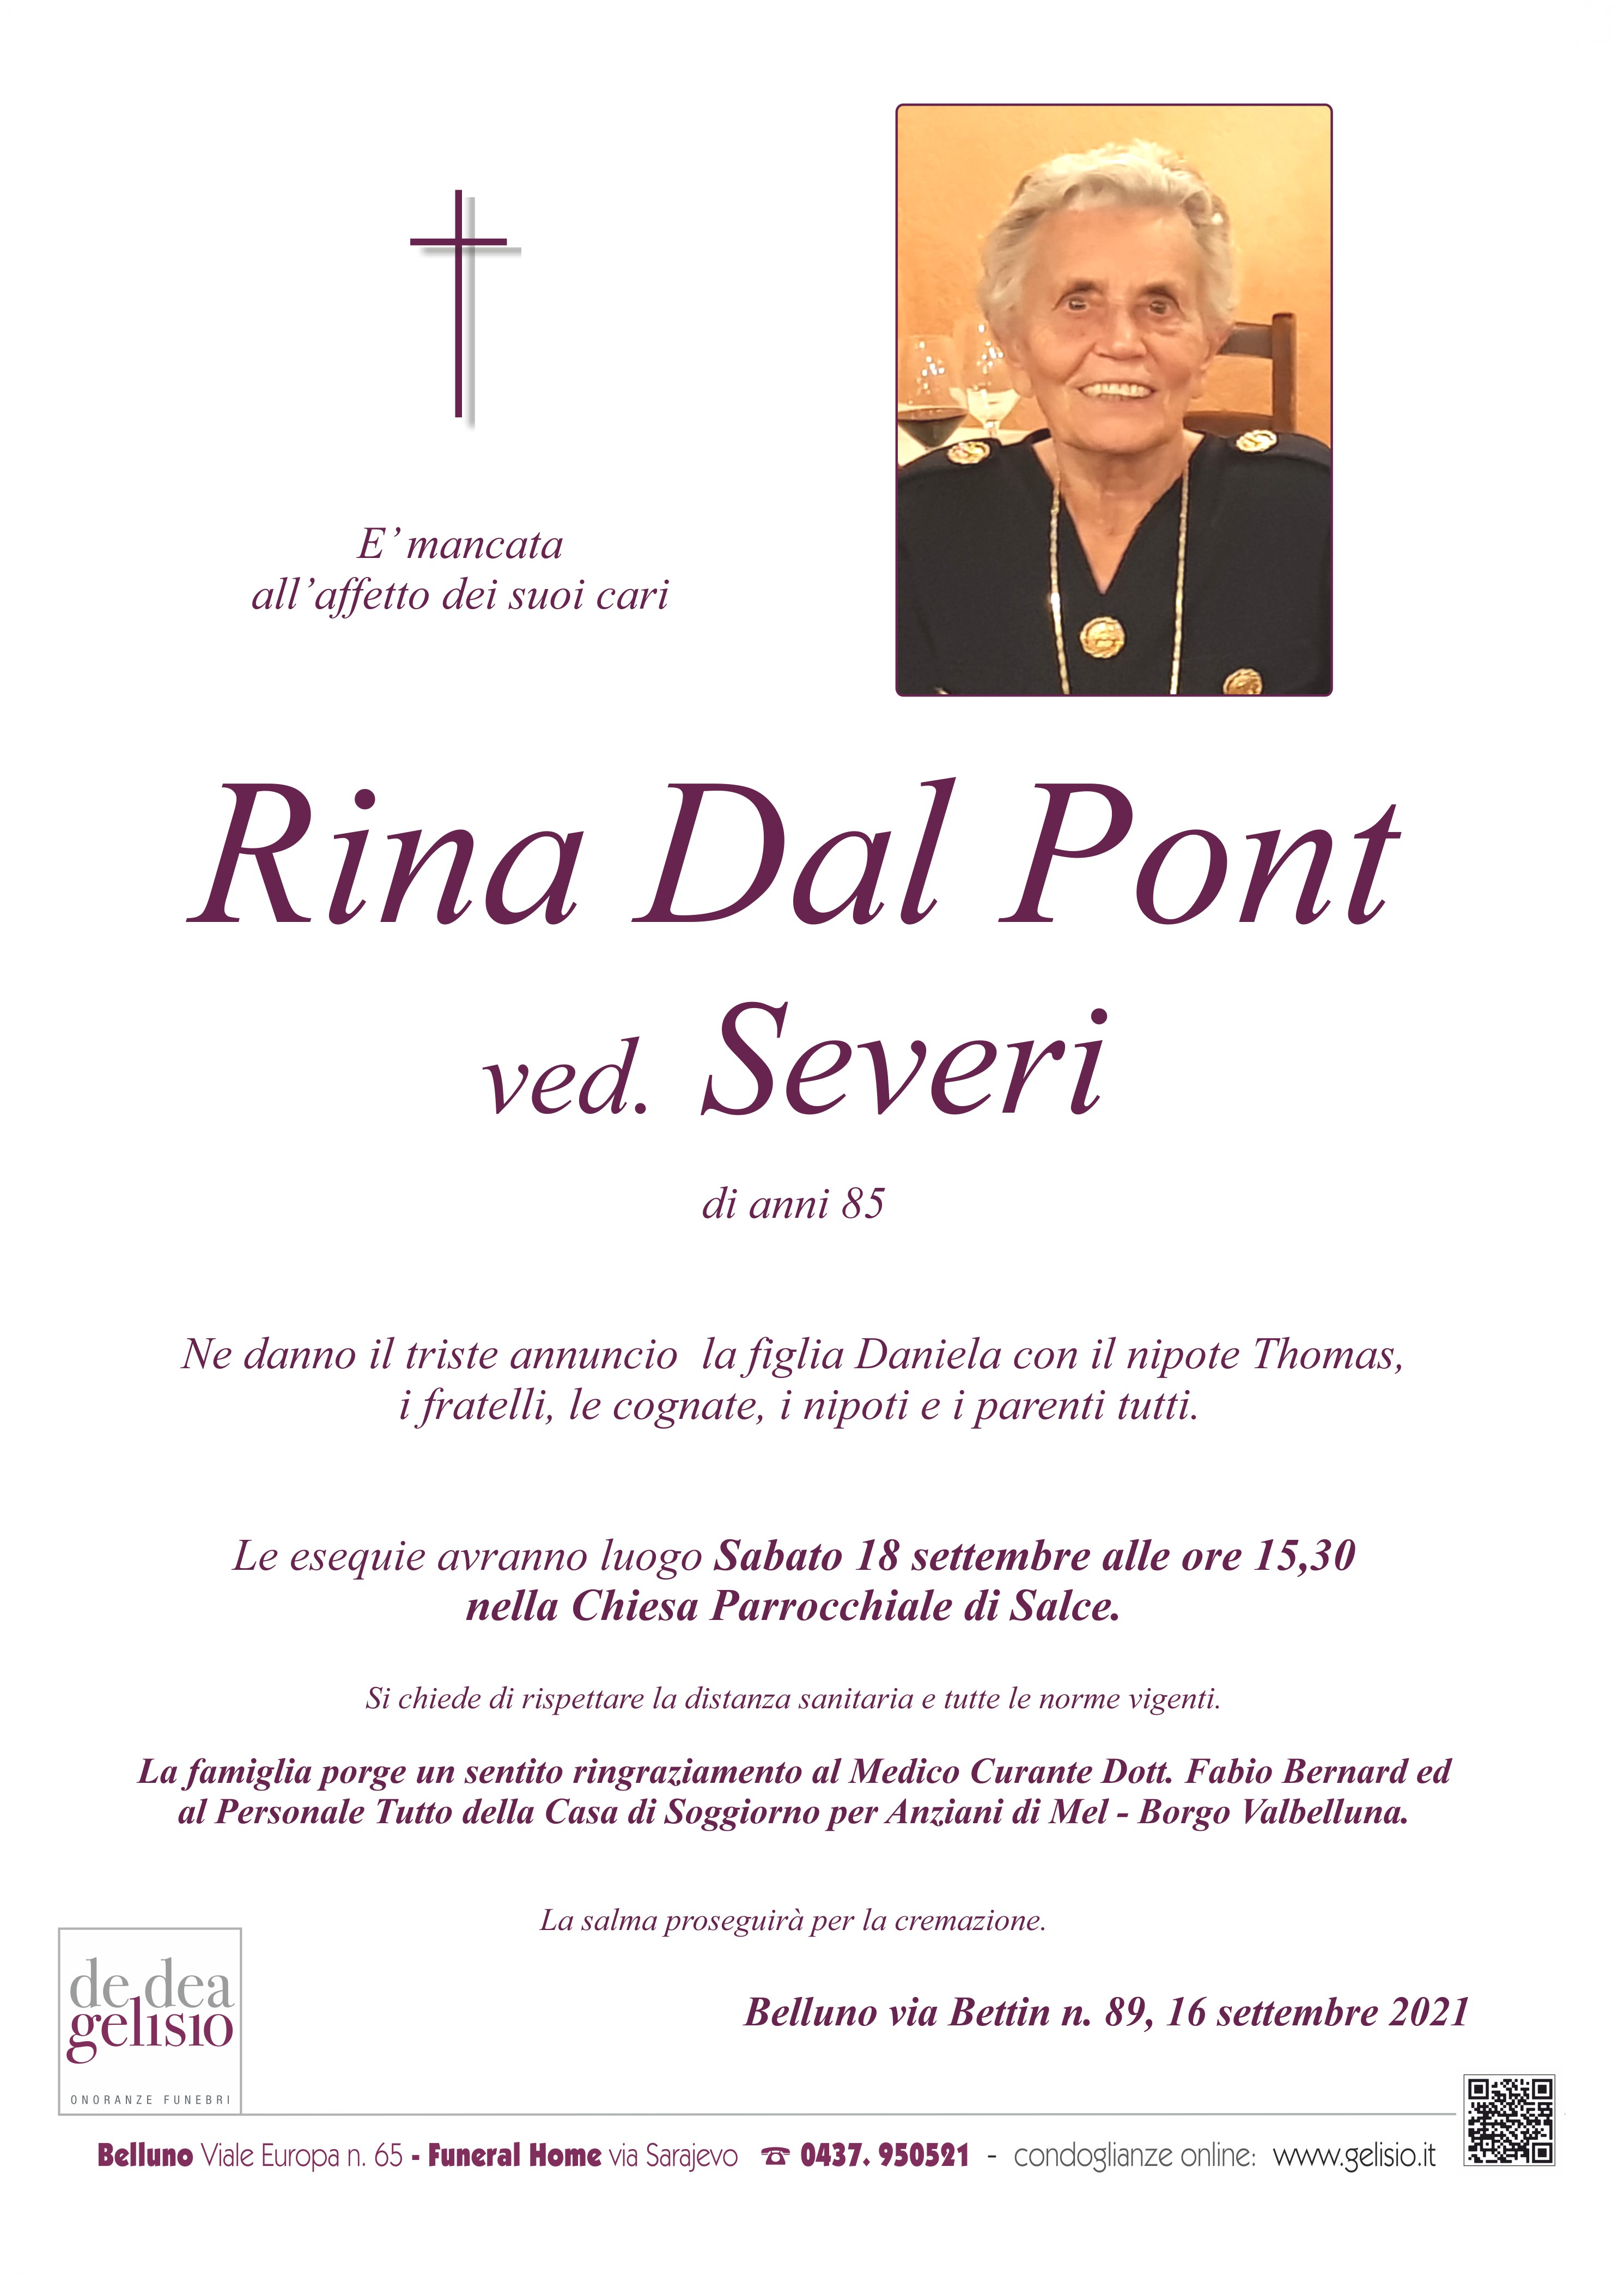 Rina Dal Pont